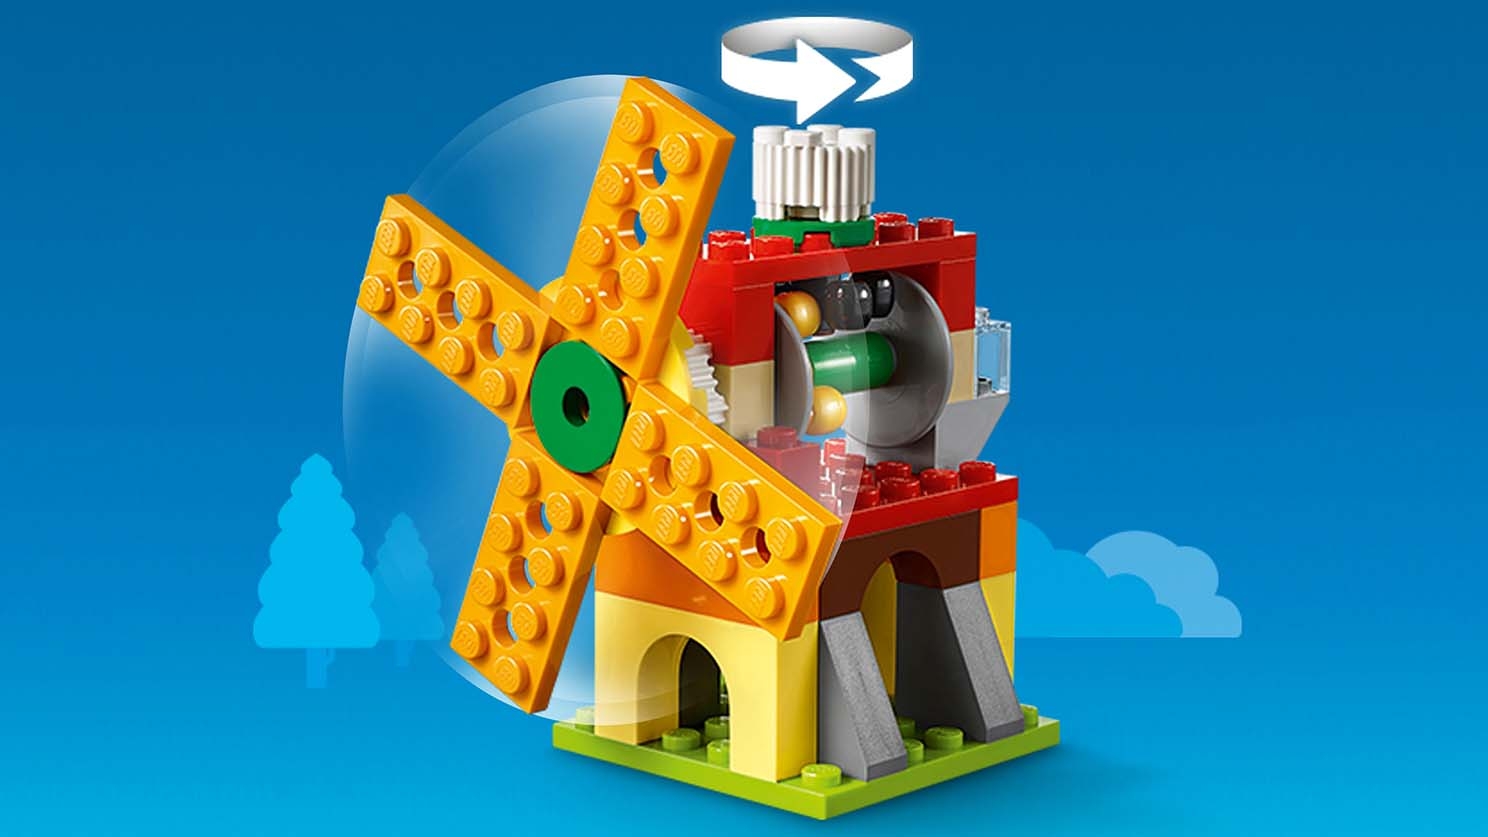 アイデアパーツ＜歯車セット＞ 10712 - レゴ®クラシック セット - LEGO